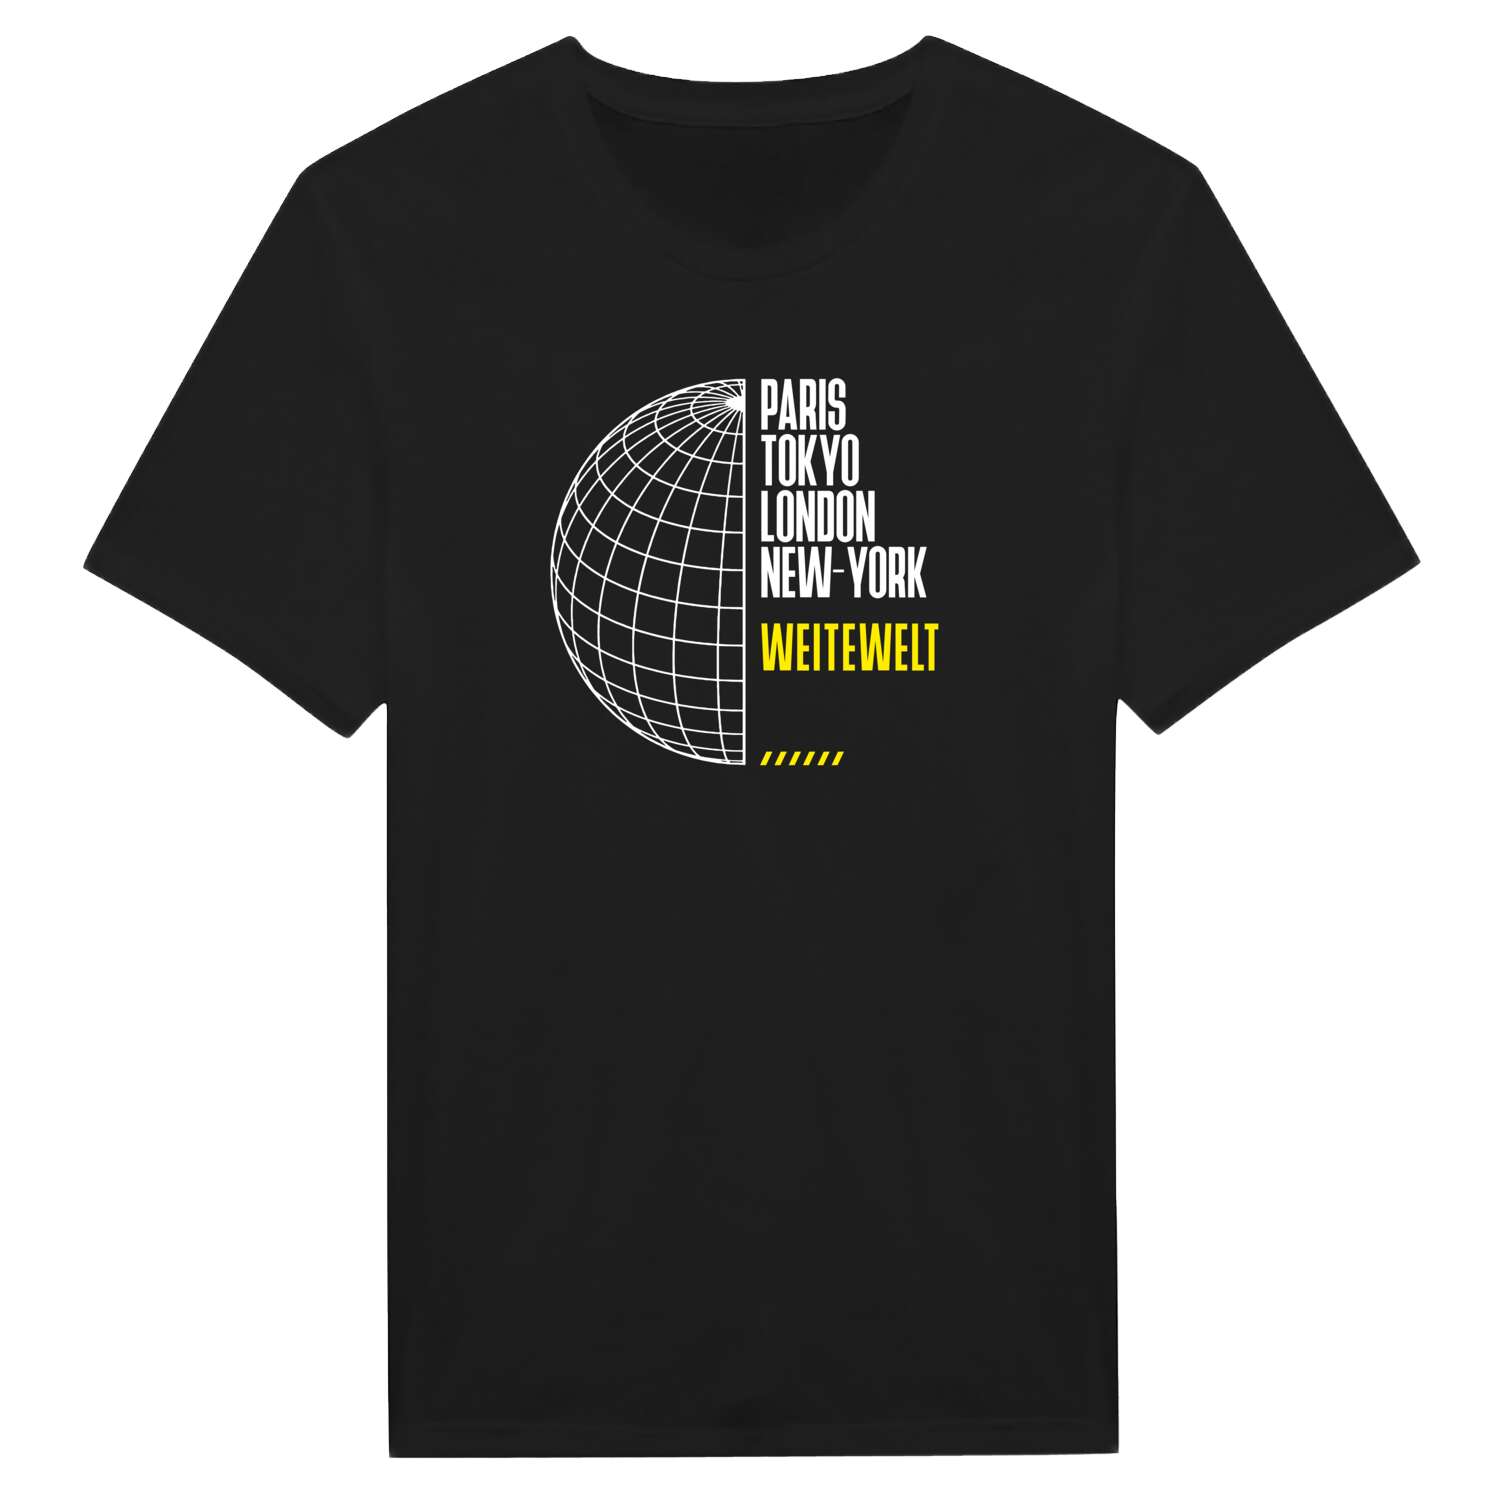 Weitewelt T-Shirt »Paris Tokyo London«